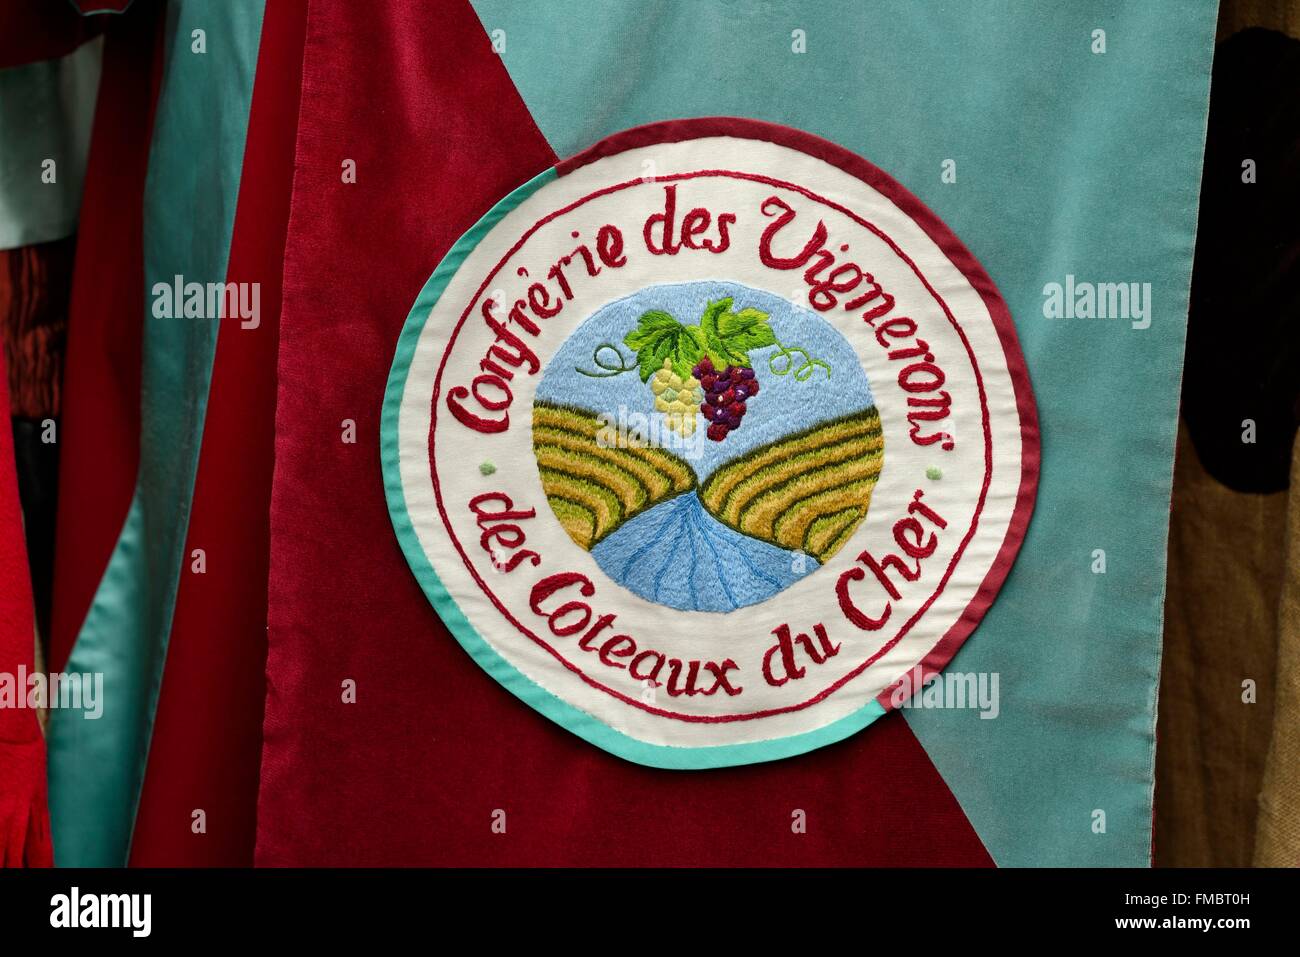 France, Loir et Cher, Saint Aignan, Confrerie des Vignerons des Coteaux du Cher, costume, emblem Stock Photo